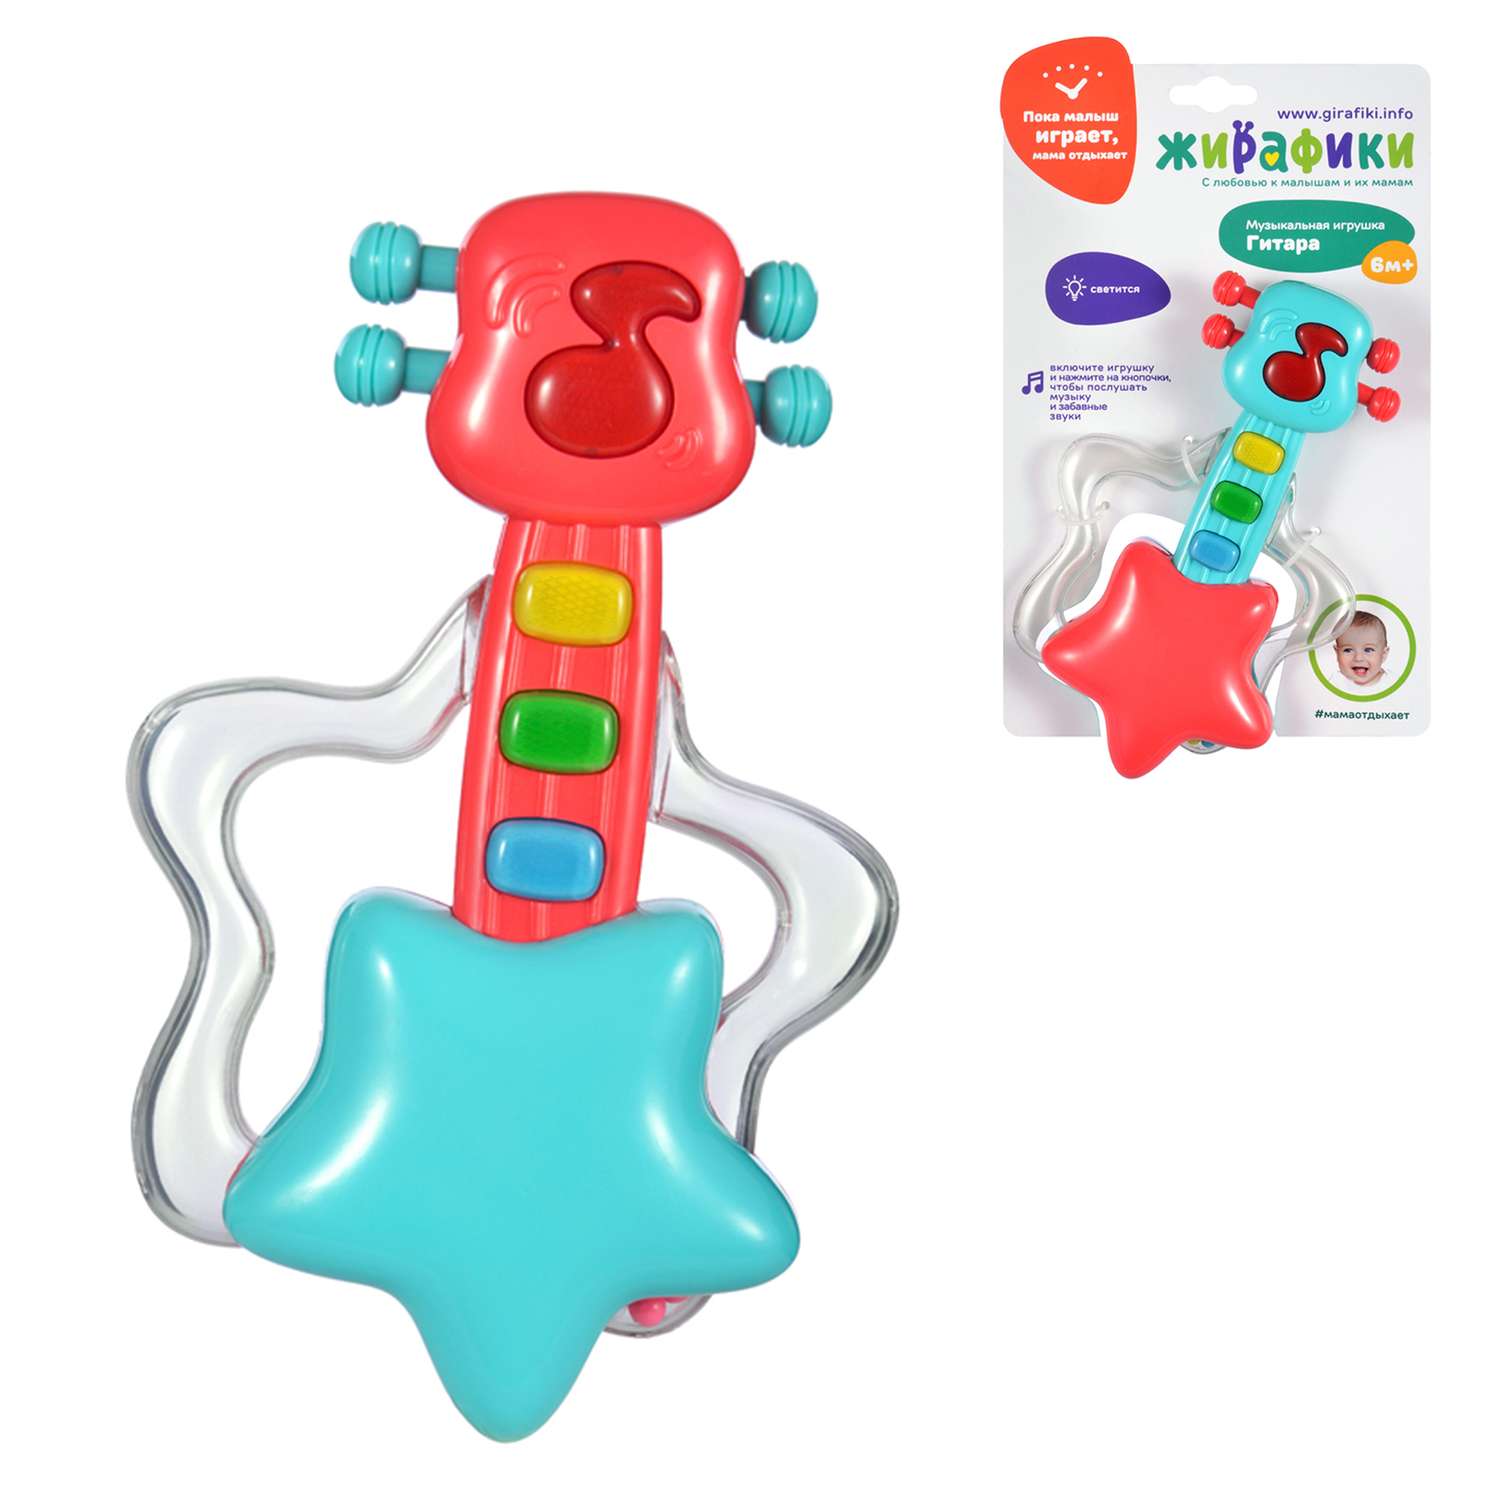 Музыкальная игрушка Жирафики детская гитара со светом - фото 2